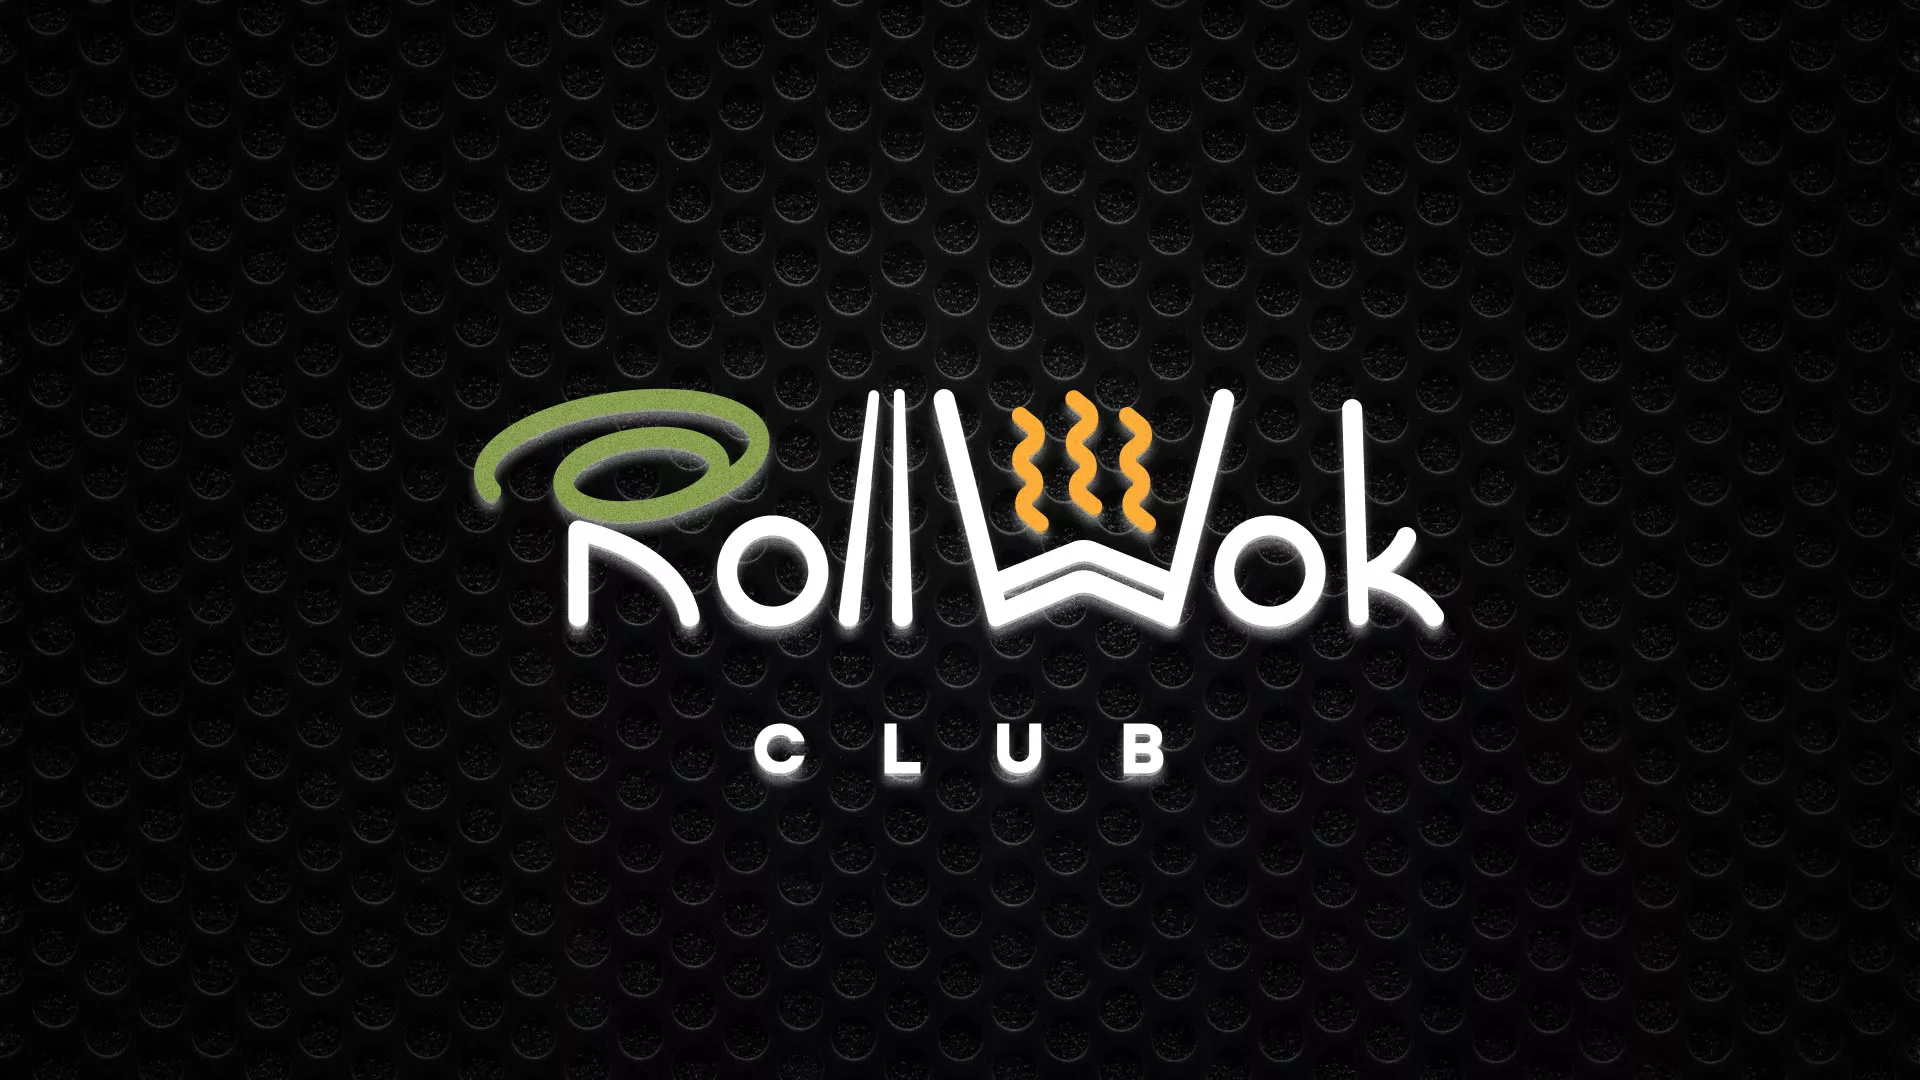 Брендирование торговых точек суши-бара «Roll Wok Club» в Зеленограде